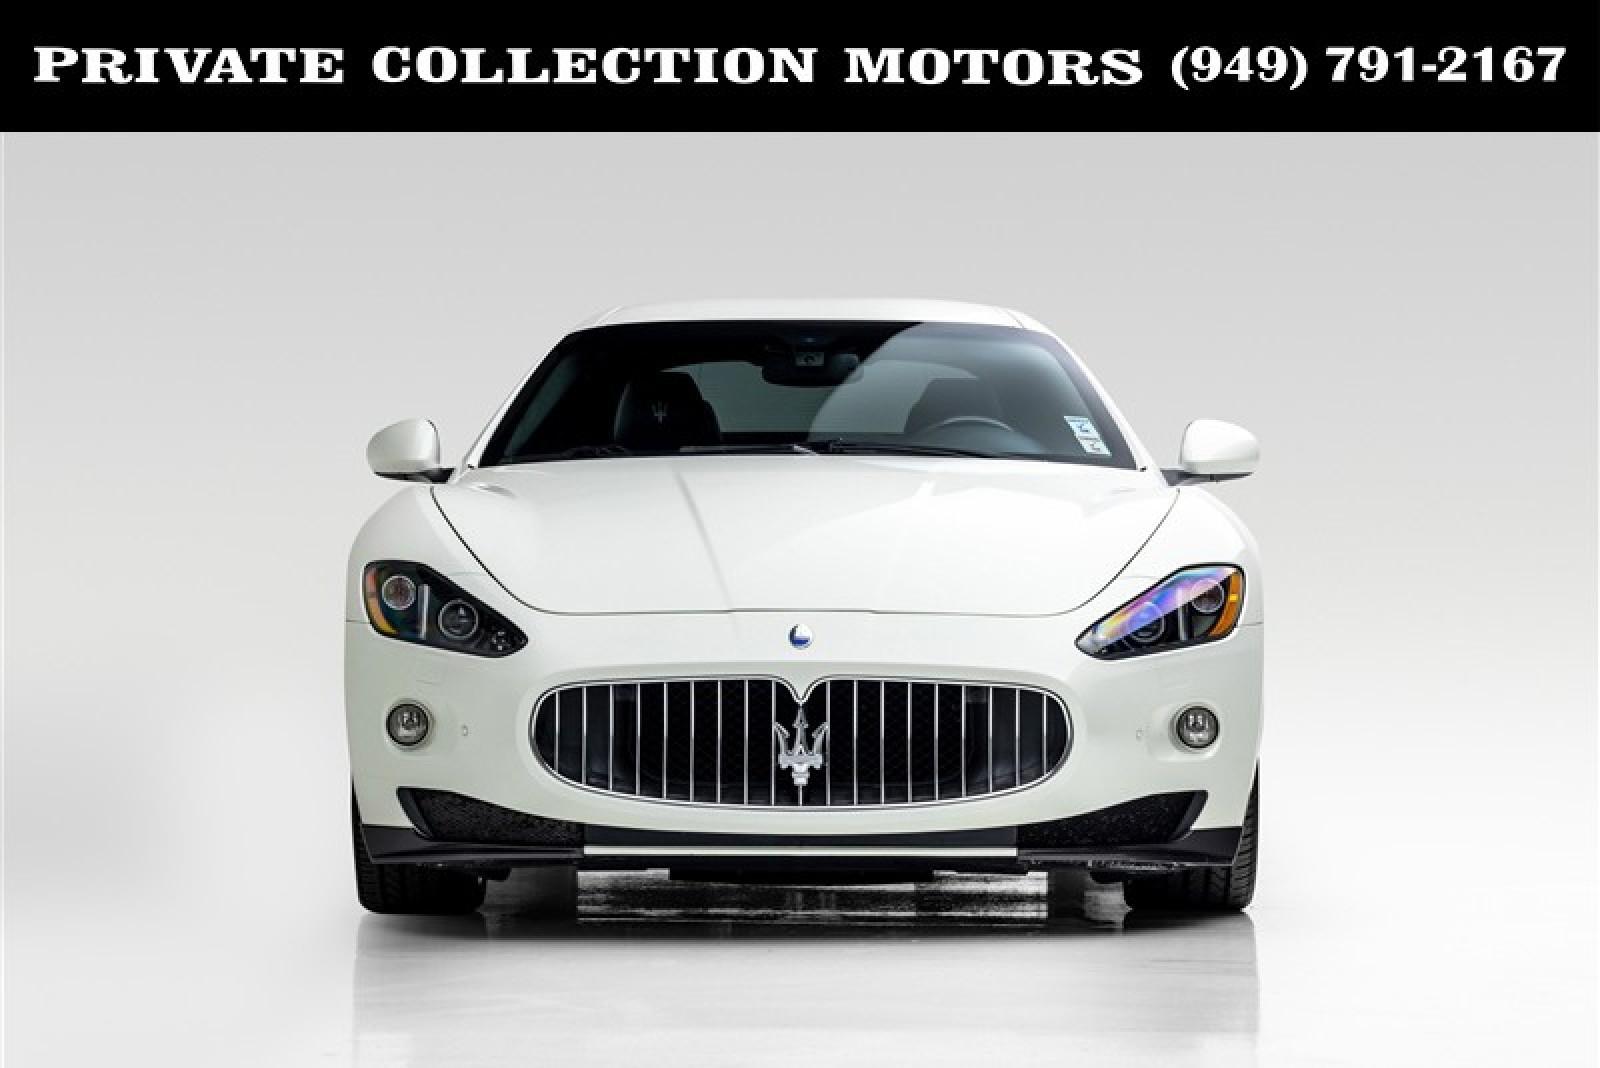 Used 2012 Maserati GranTurismo S For Sale (Sold) | Private